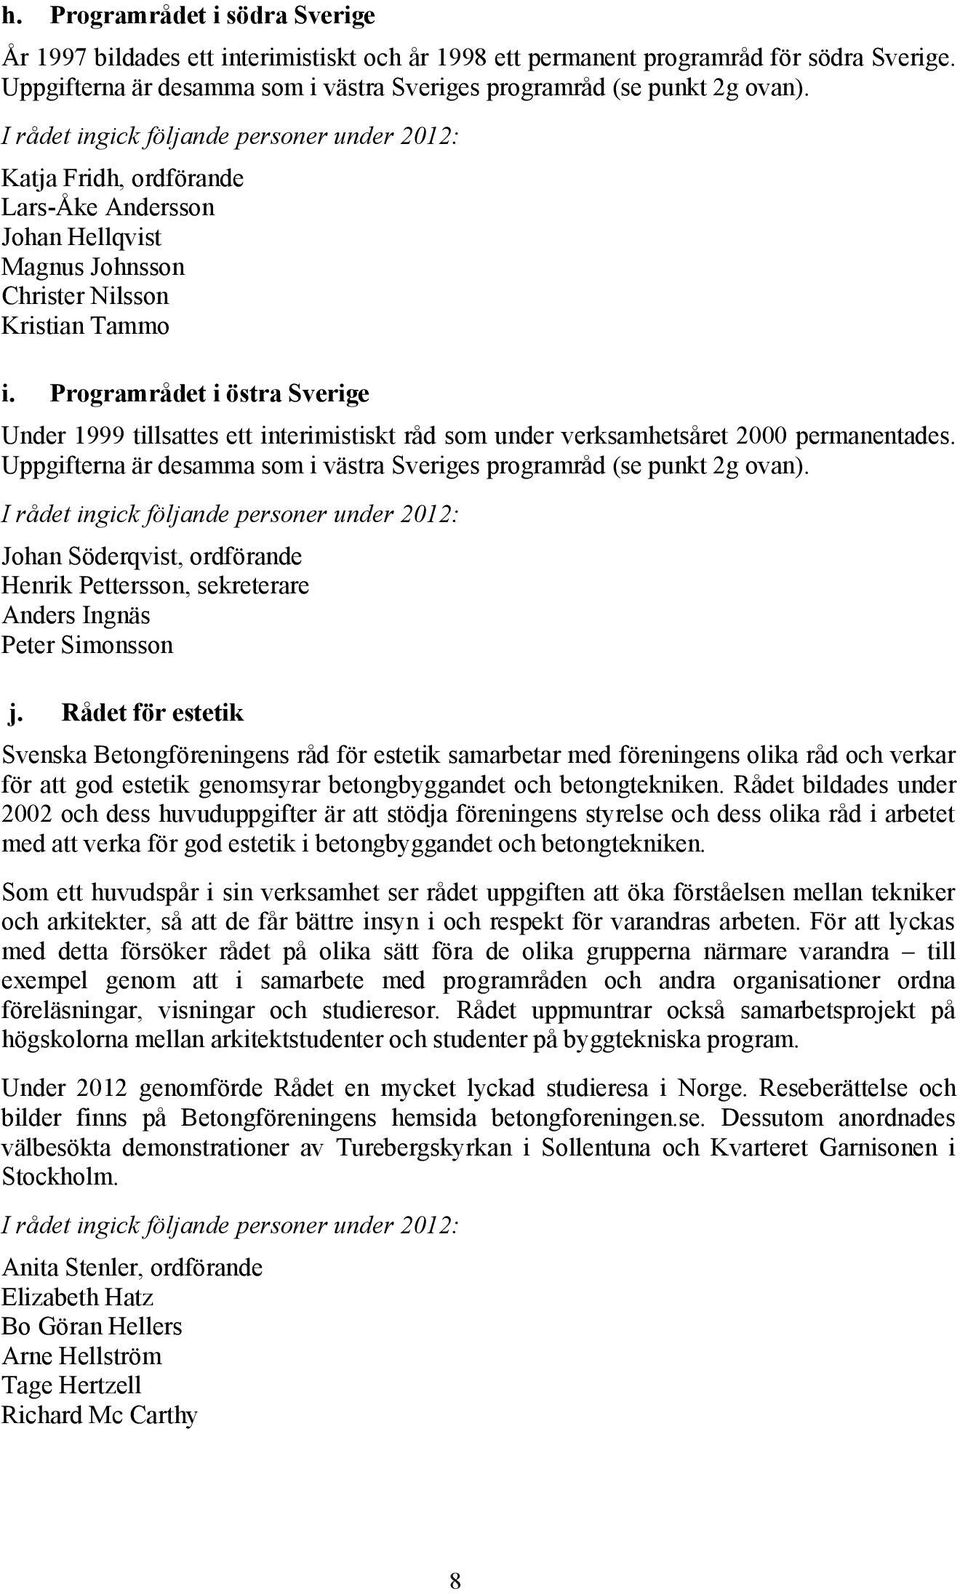 Programrådet i östra Sverige Under 1999 tillsattes ett interimistiskt råd som under verksamhetsåret 2000 permanentades. Uppgifterna är desamma som i västra Sveriges programråd (se punkt 2g ovan).